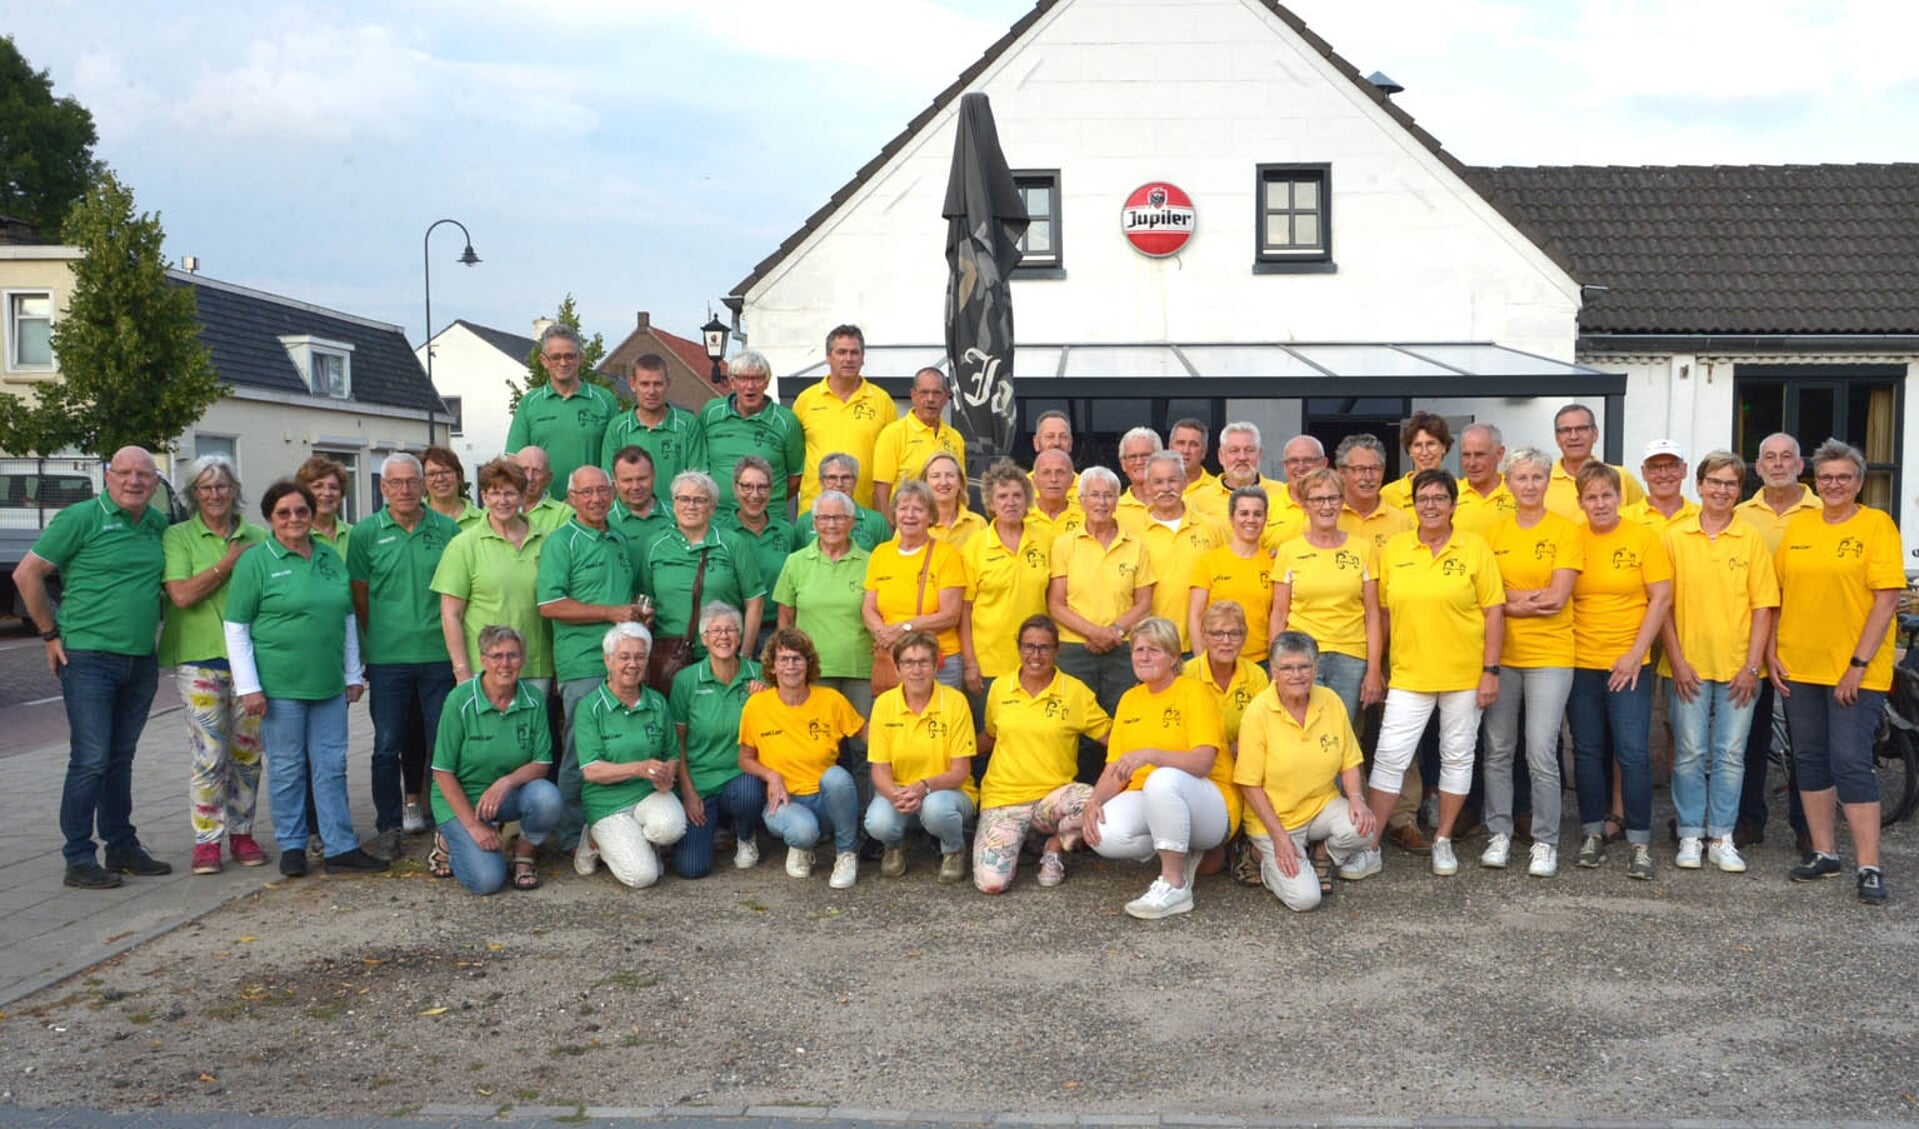 De leden van Volkel Loopt, te herkennen aan hun gele en groene shirts (foto: Henk Lunenburg)